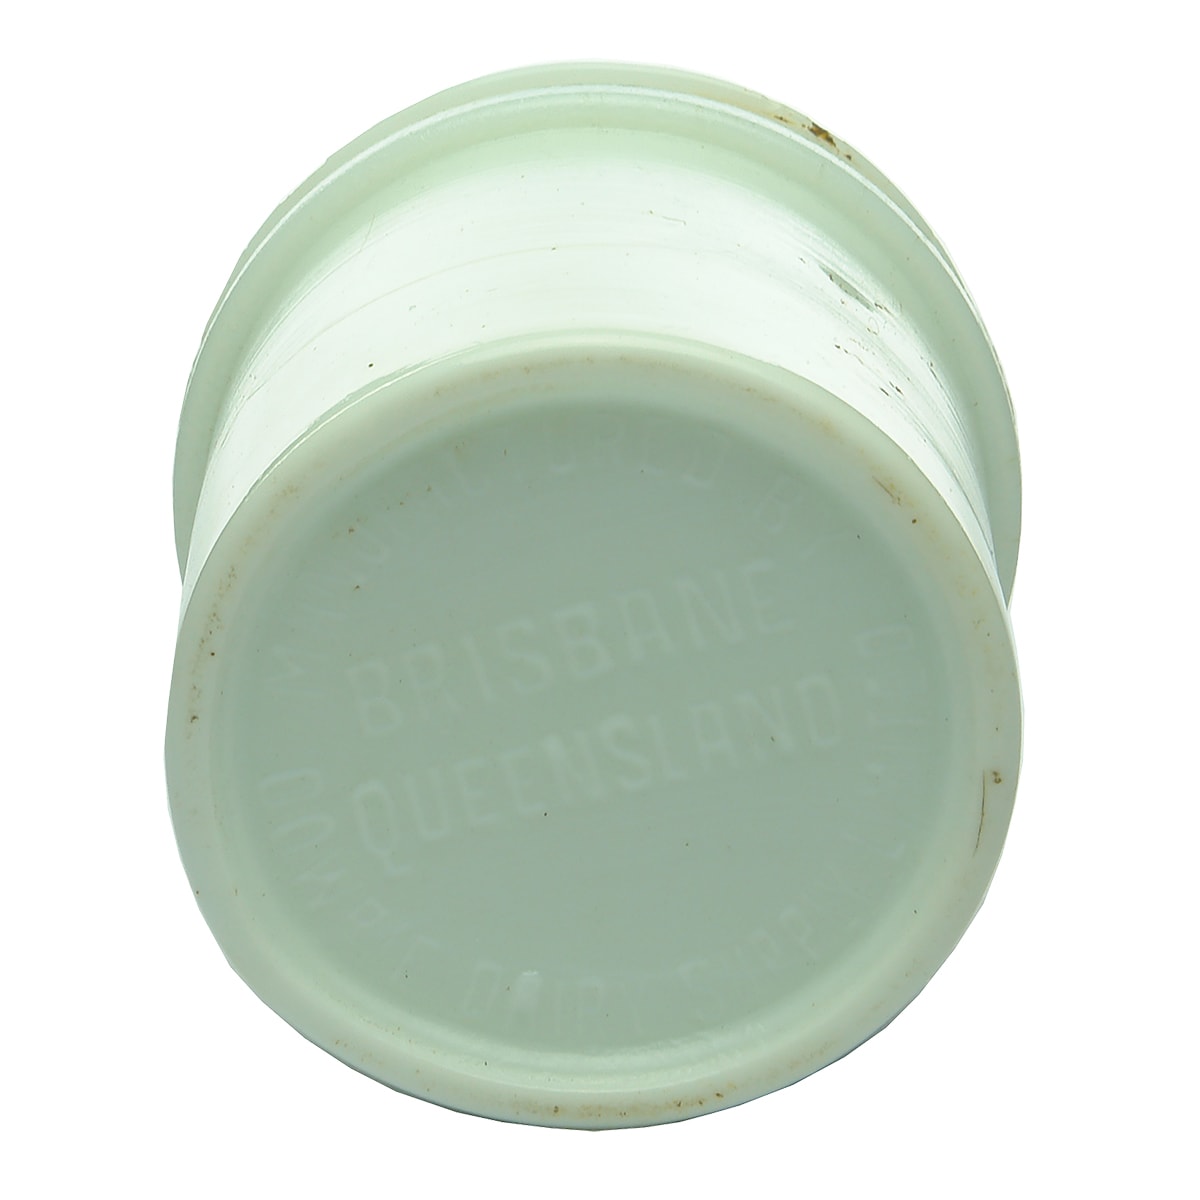 Jar. Gowrie Dairy Supply Limited, Brisbane. Milk glass. (Queensland)